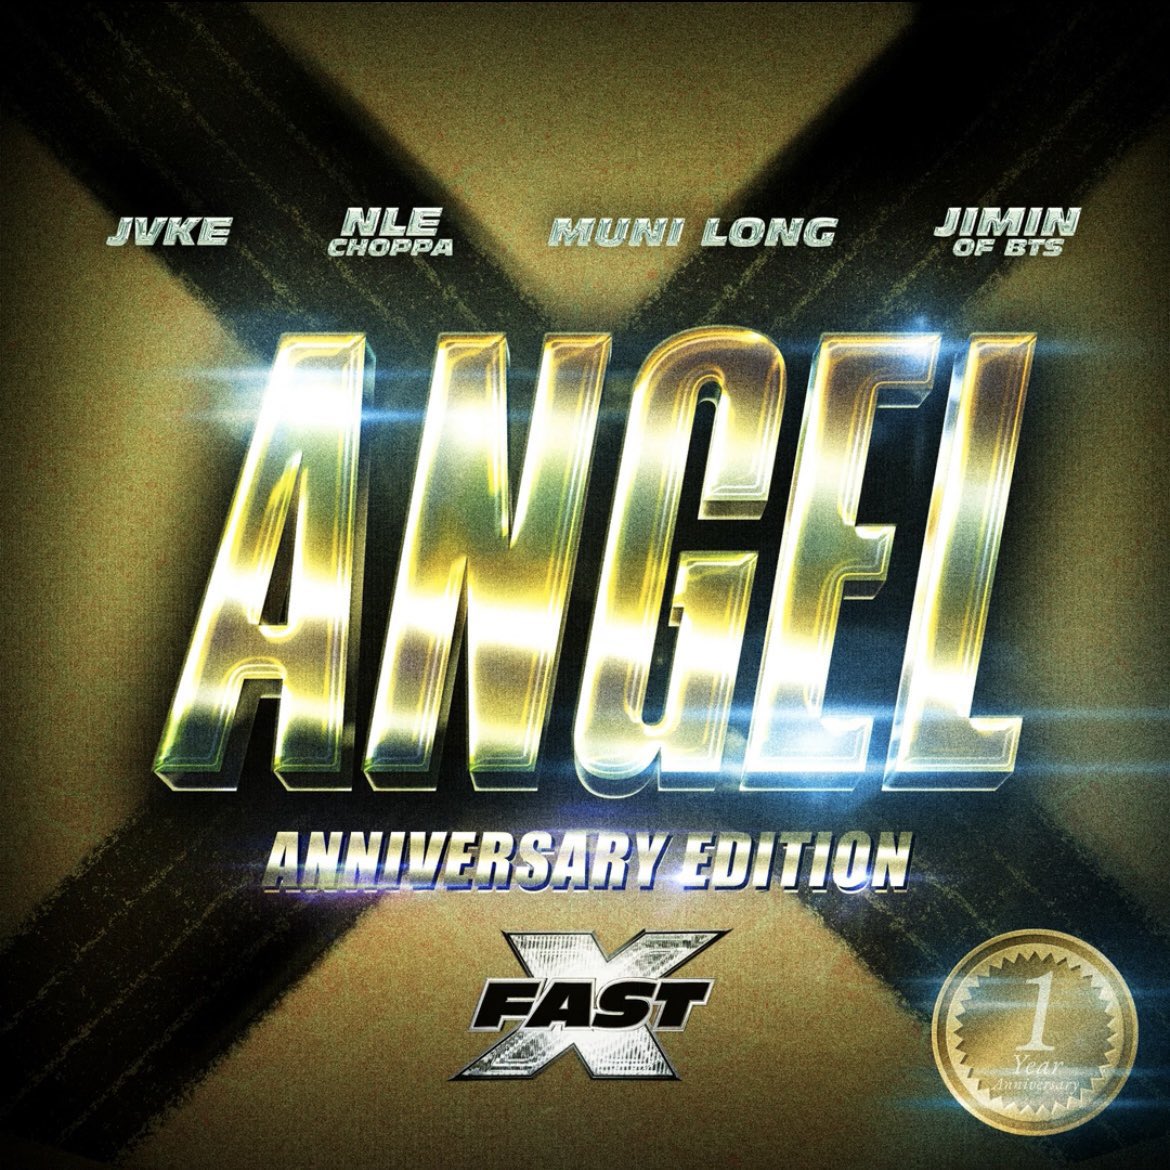 ฟัง ‘Angel Anniversary Edition (ft. JVKE, NLE Choppa, Muni Long, #BTS #Jimin)’ ได้ตอนนี้! ฉลองการปล่อย ‘Angel Pt.1’ ครบ 1 ปี • Spotify: open.spotify.com/track/1XE3rehh… • Apple Music: music.apple.com/th/album/angel… • YouTube: youtu.be/Nz_KRDU-_8U • YouTube Music: music.youtube.com/watch?v=Nz_KRD…